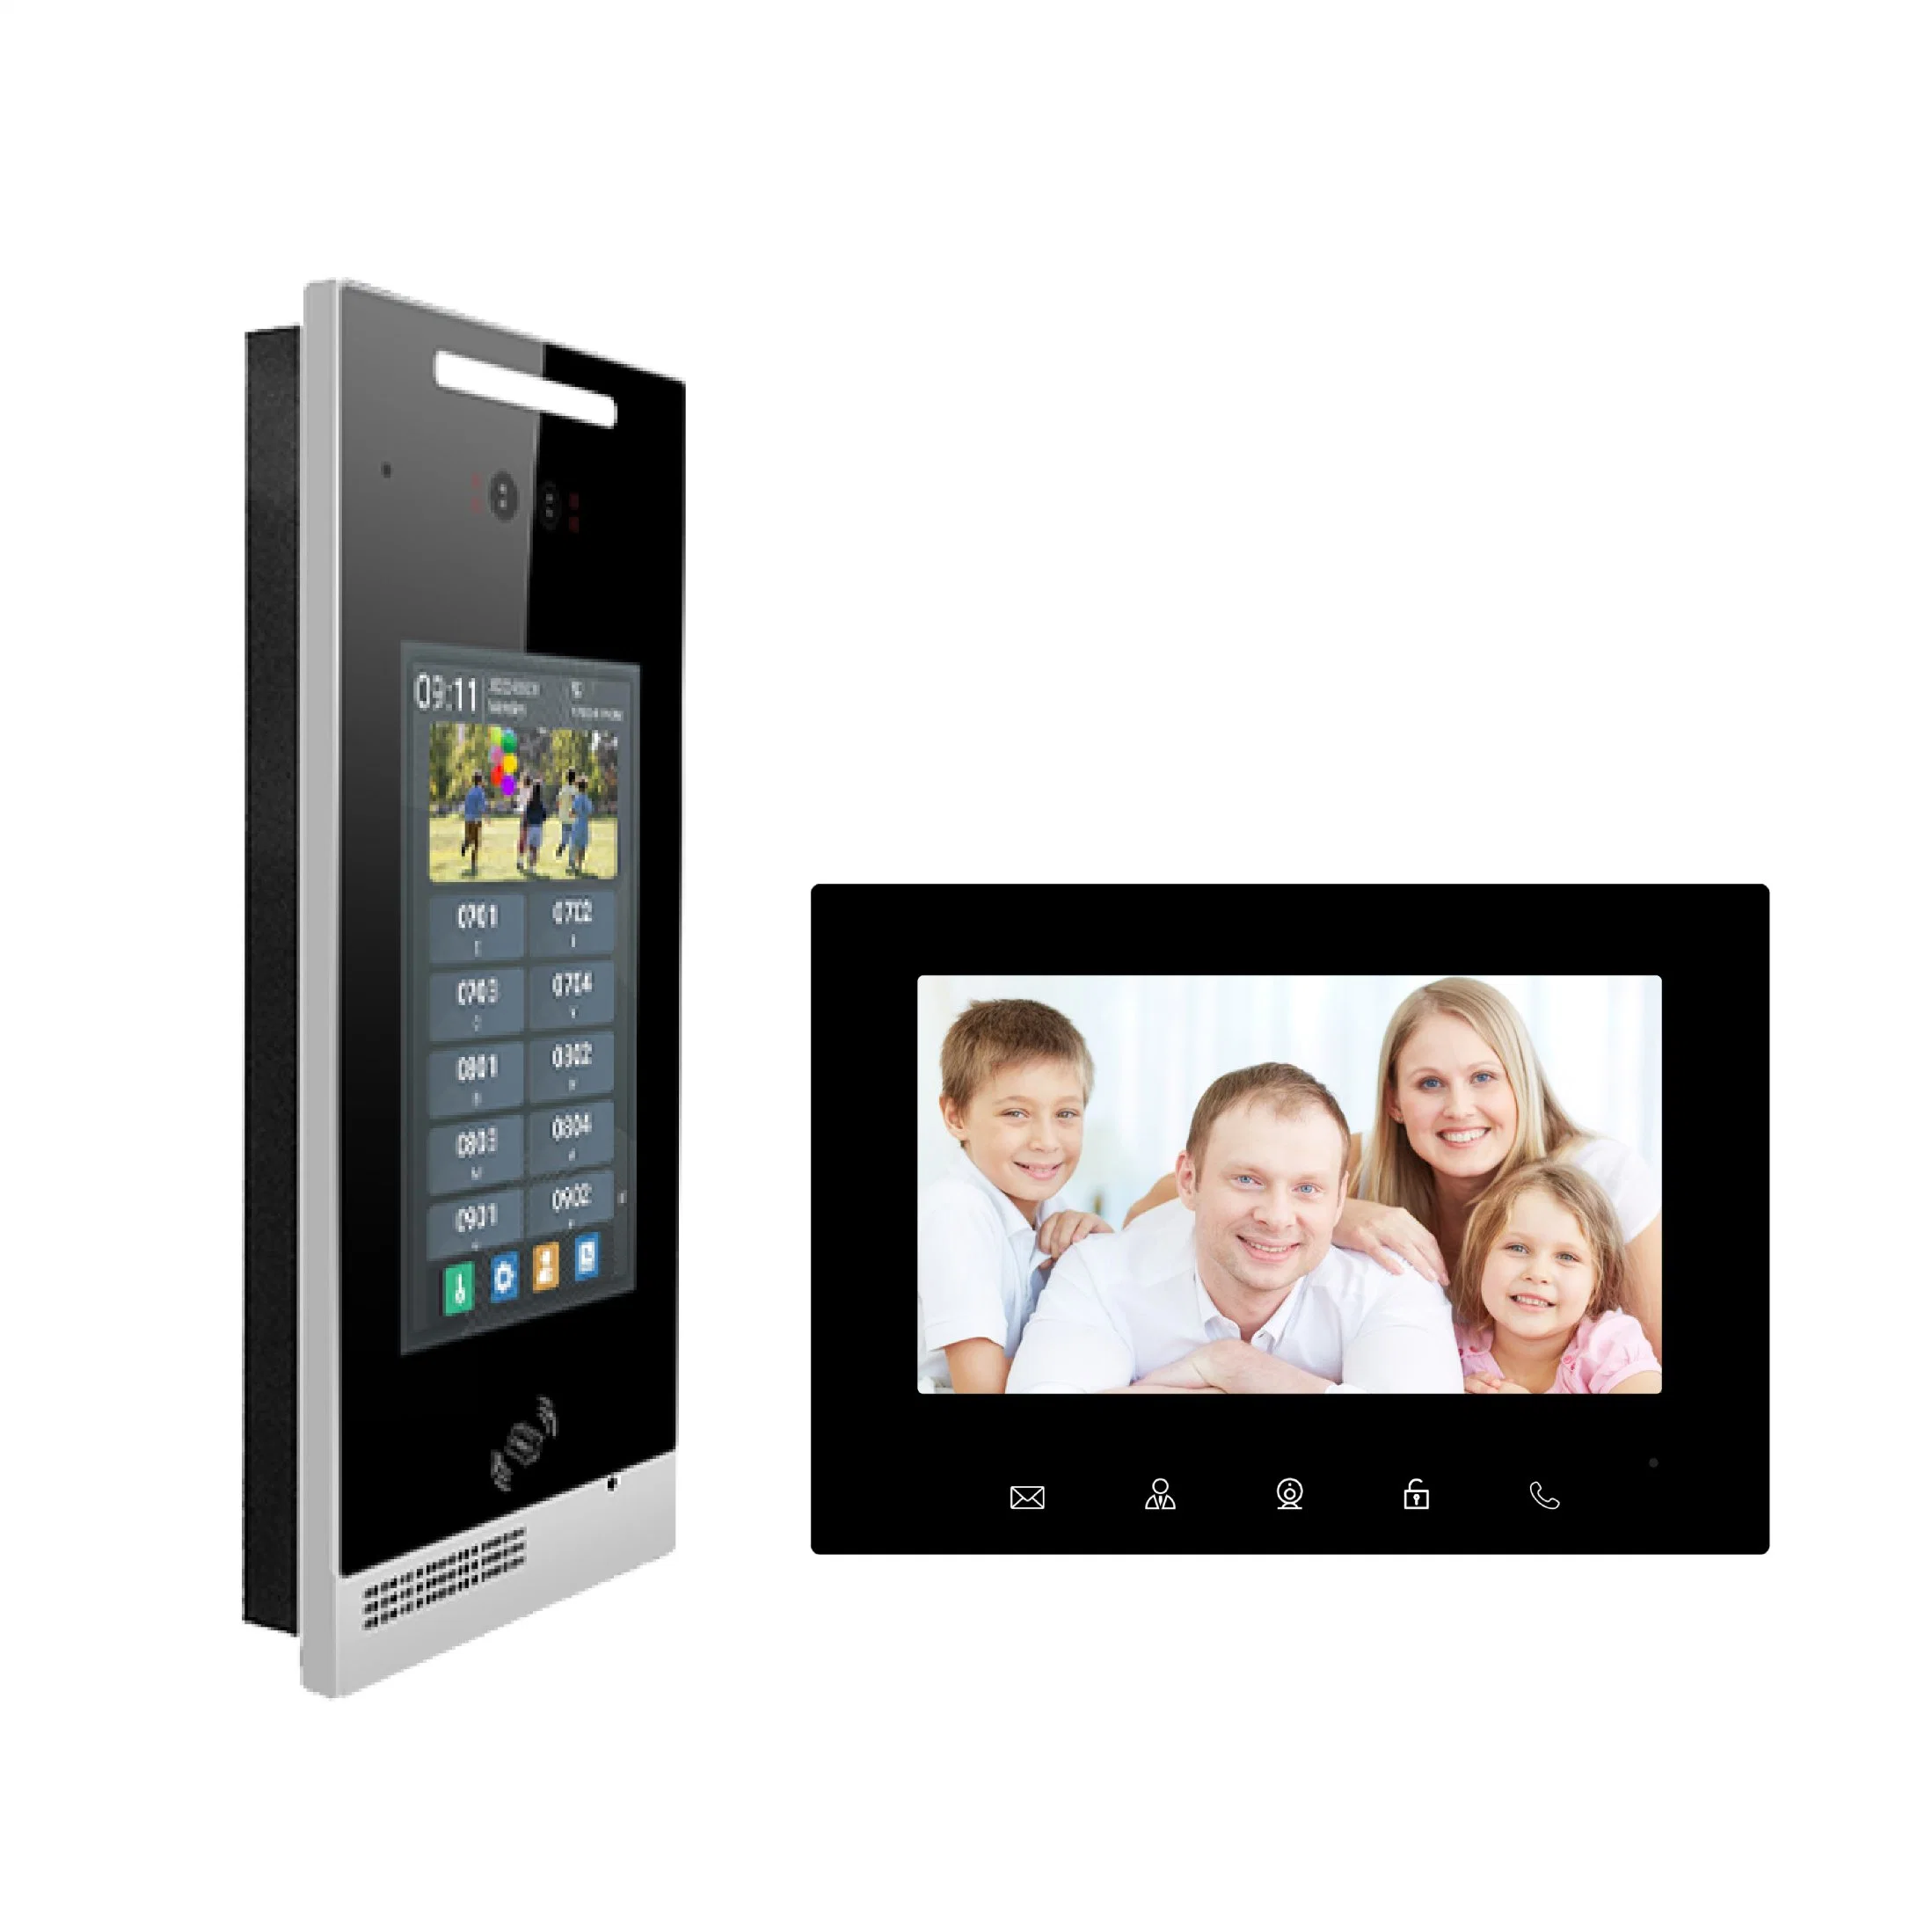 Appareil photo étanche sonnette Fonction intercom vidéo d'accès intelligent Door Phone système intercom